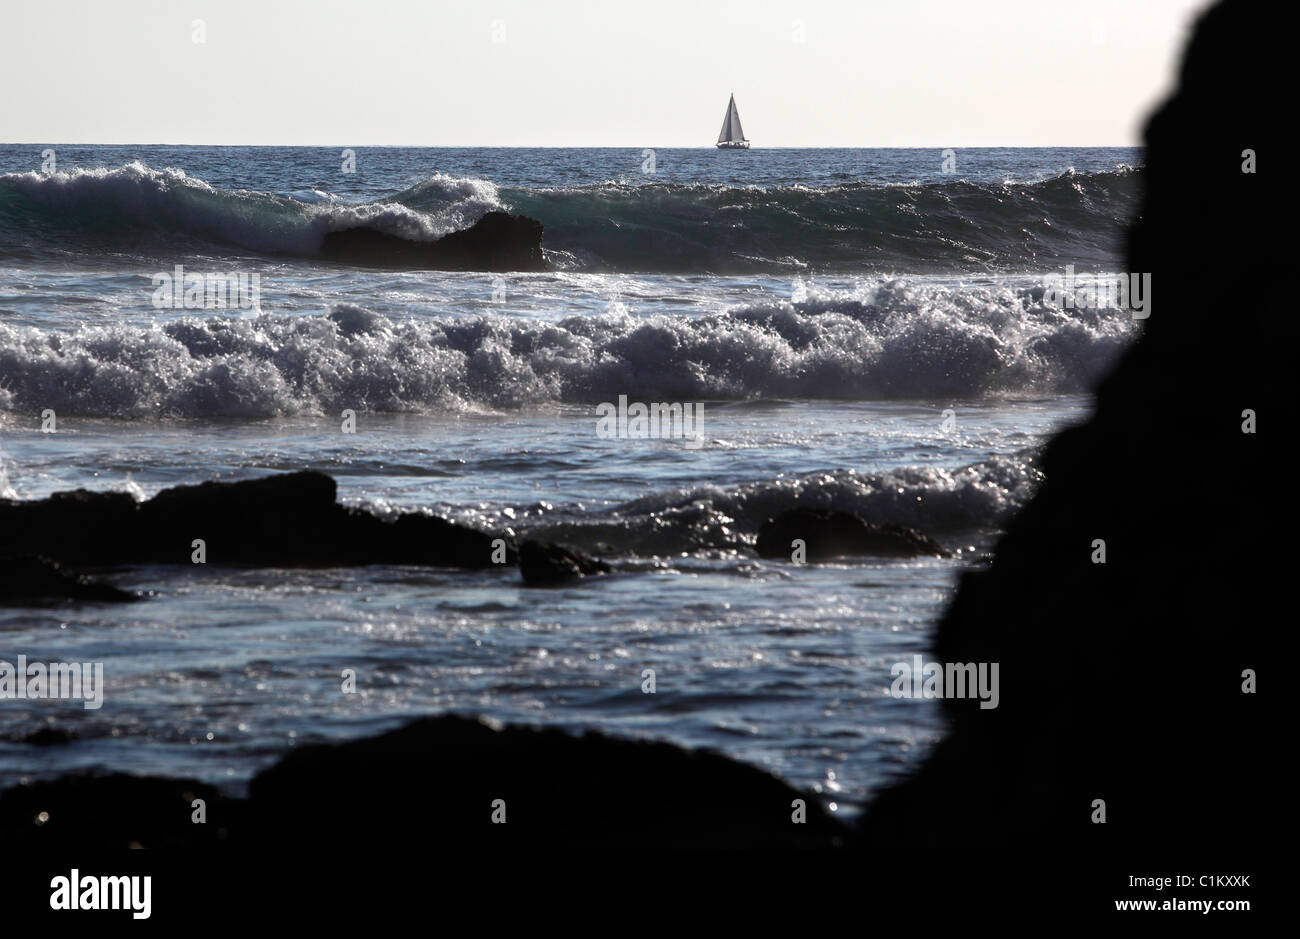 Waves break on a rocky coast with a sailboat on the horizon, Samara, Nicoya Peninsula, Costa Rica Stock Photo